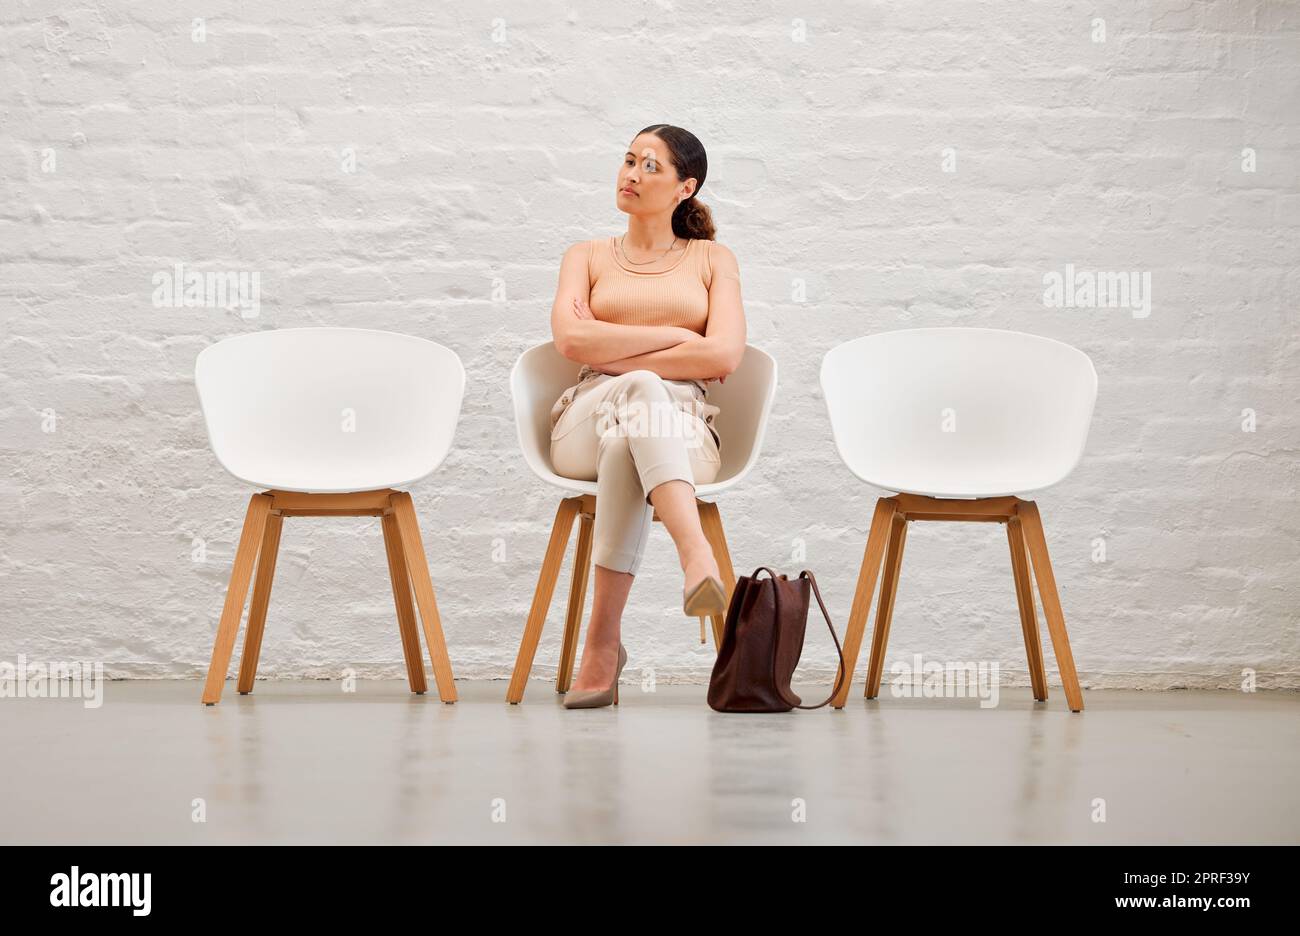 Emploi, embauche et recrutement avec une jeune femme d'affaires assise sur une chaise en attendant son entrevue avec les ressources humaines. Candidate à la liste des candidats semble impatiente ou nerveuse pour une réunion Banque D'Images